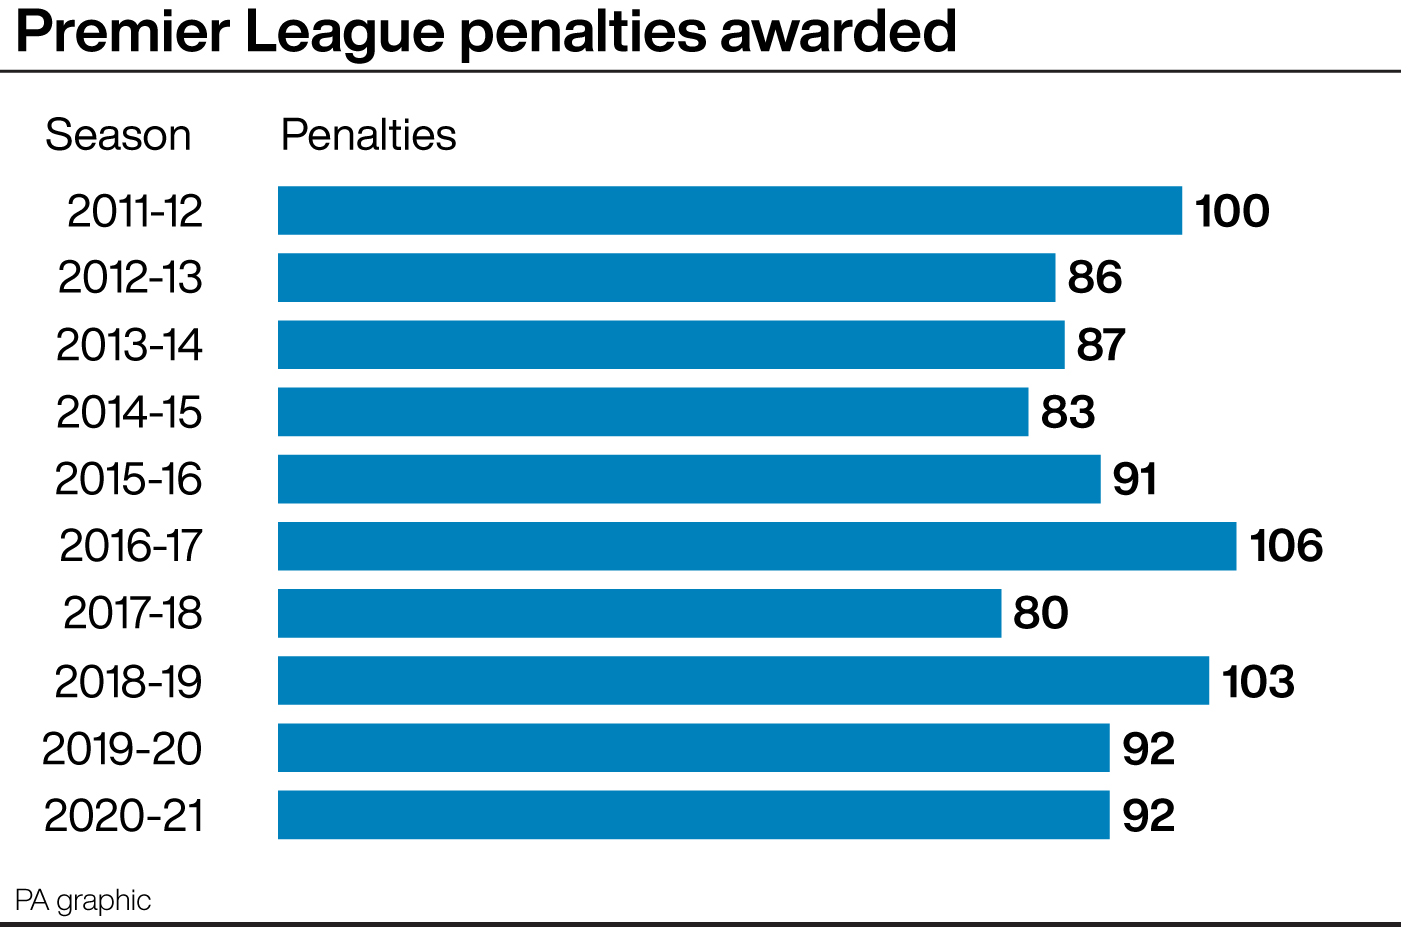 Premier League penalties by season